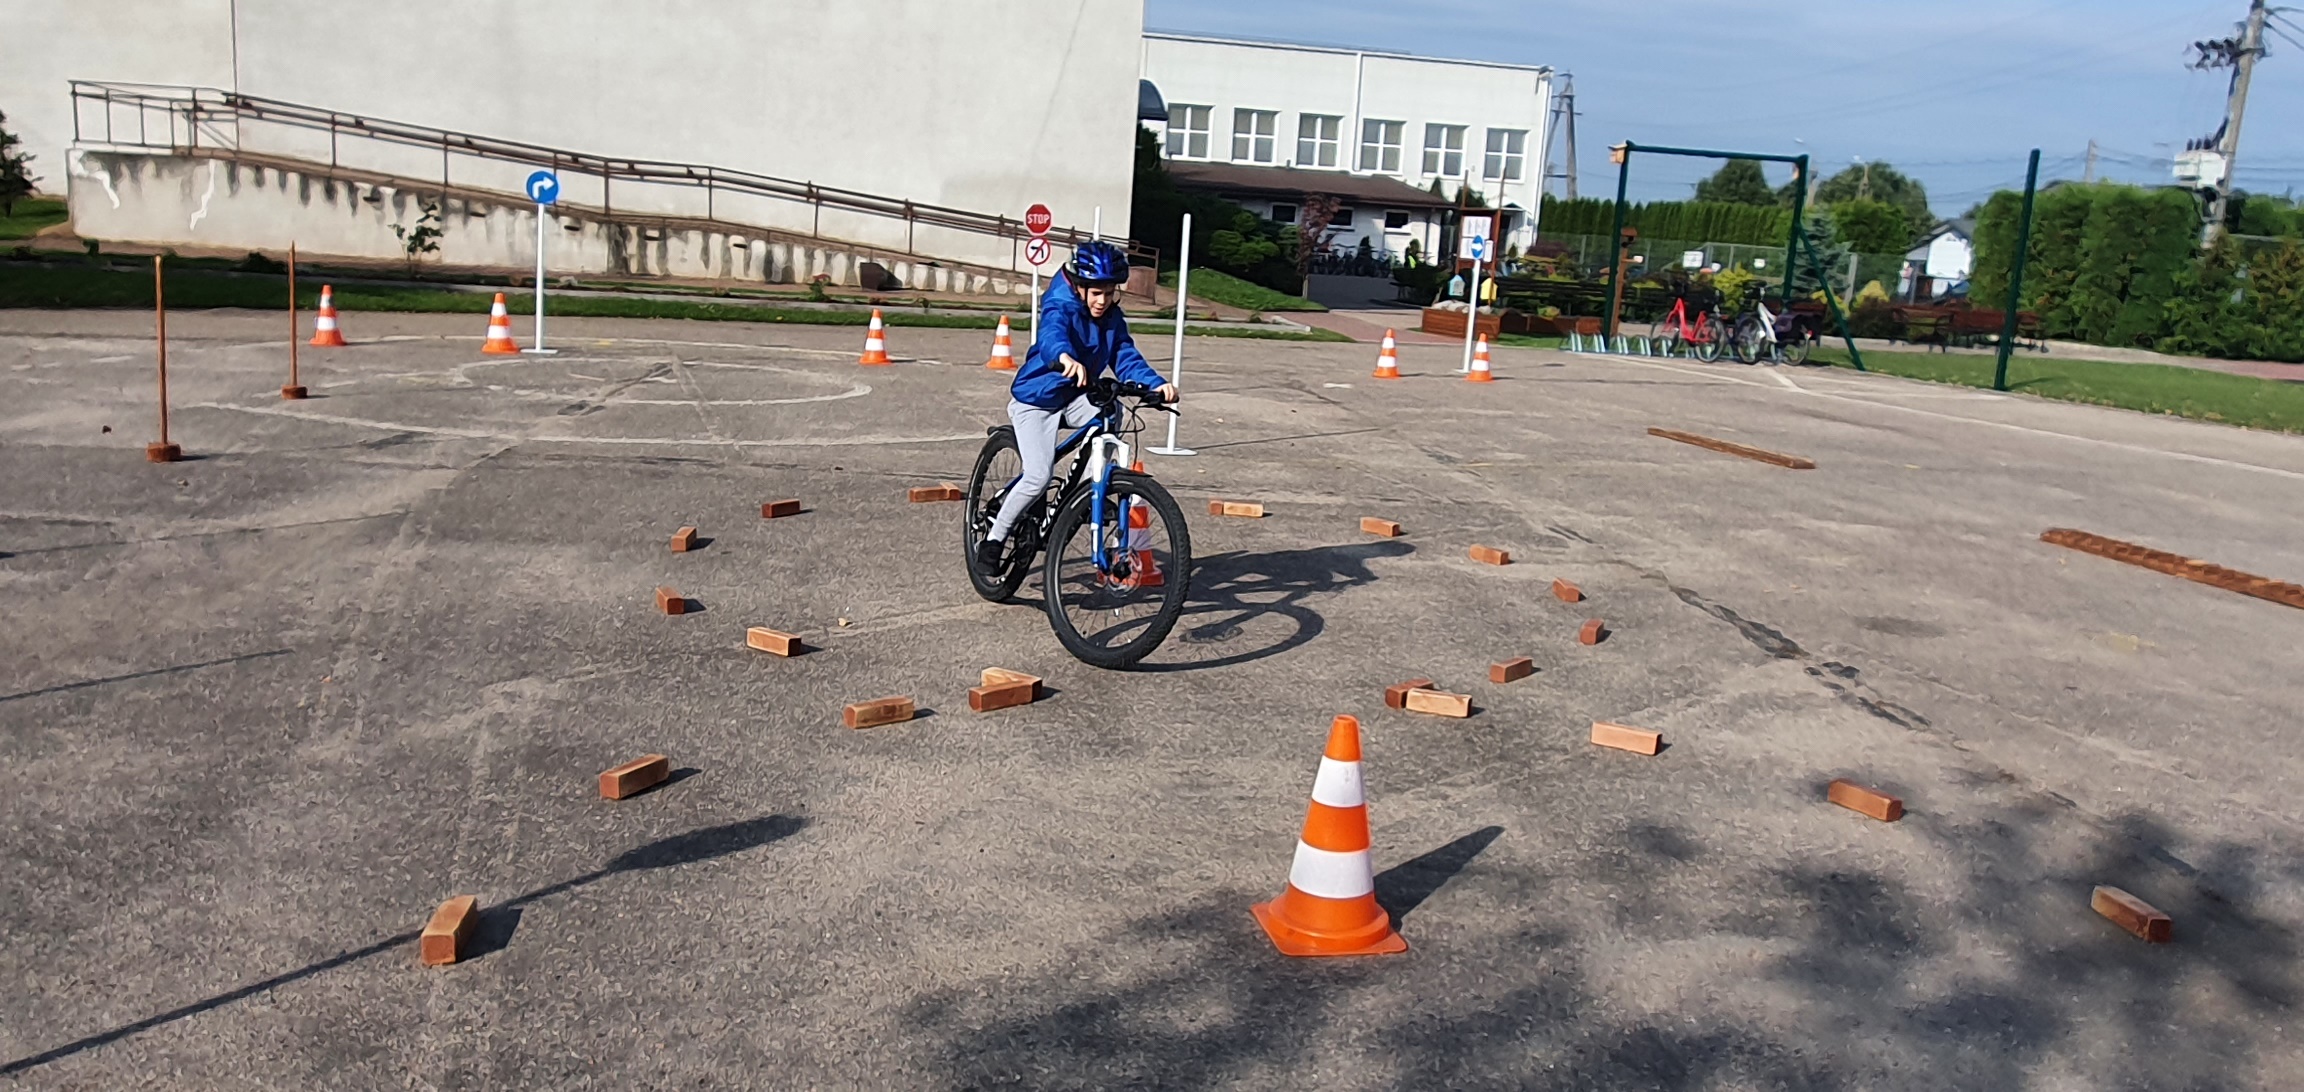 Chłopiec w niebieskiej kurtce i niebieskim kasku jedzie rowerem po placu, gdzie trasę jazdy wyznaczają cegły i pachołki